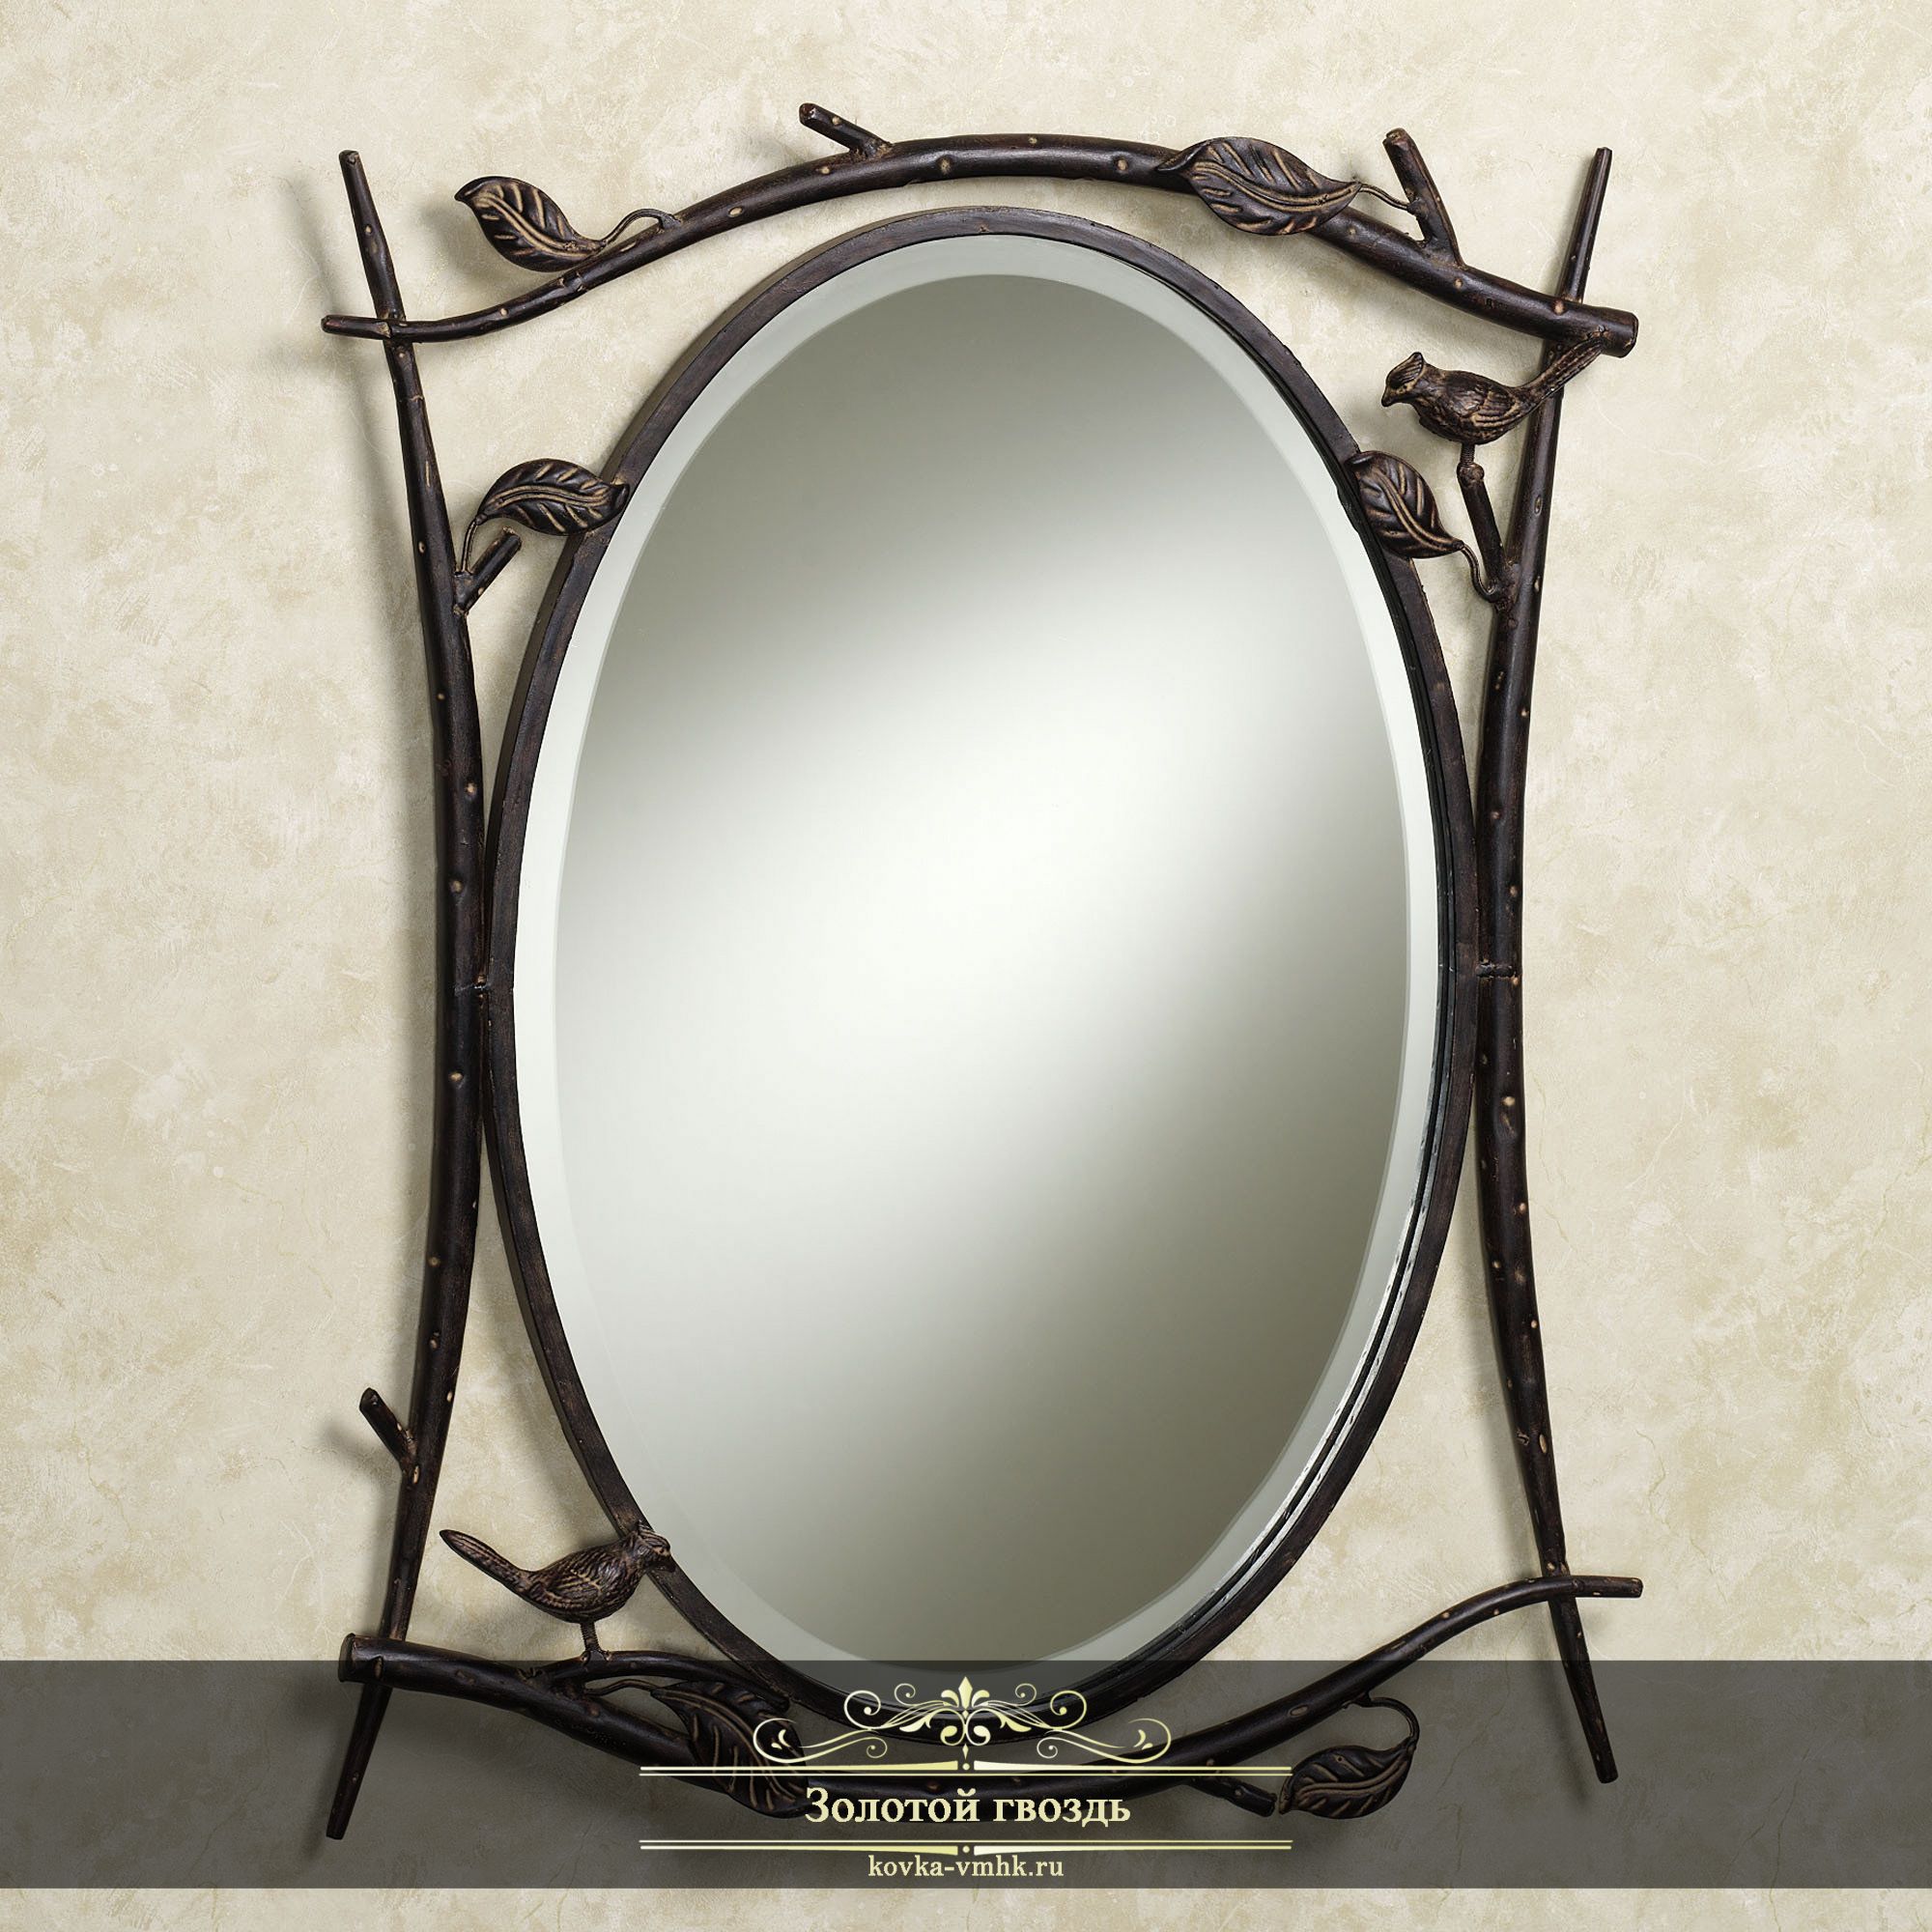 Купить зеркало в саратове. Кованое зеркало. Зеркало в металлической оправе. Зеркала в металлических рамах. Зеркало в металлической раме.